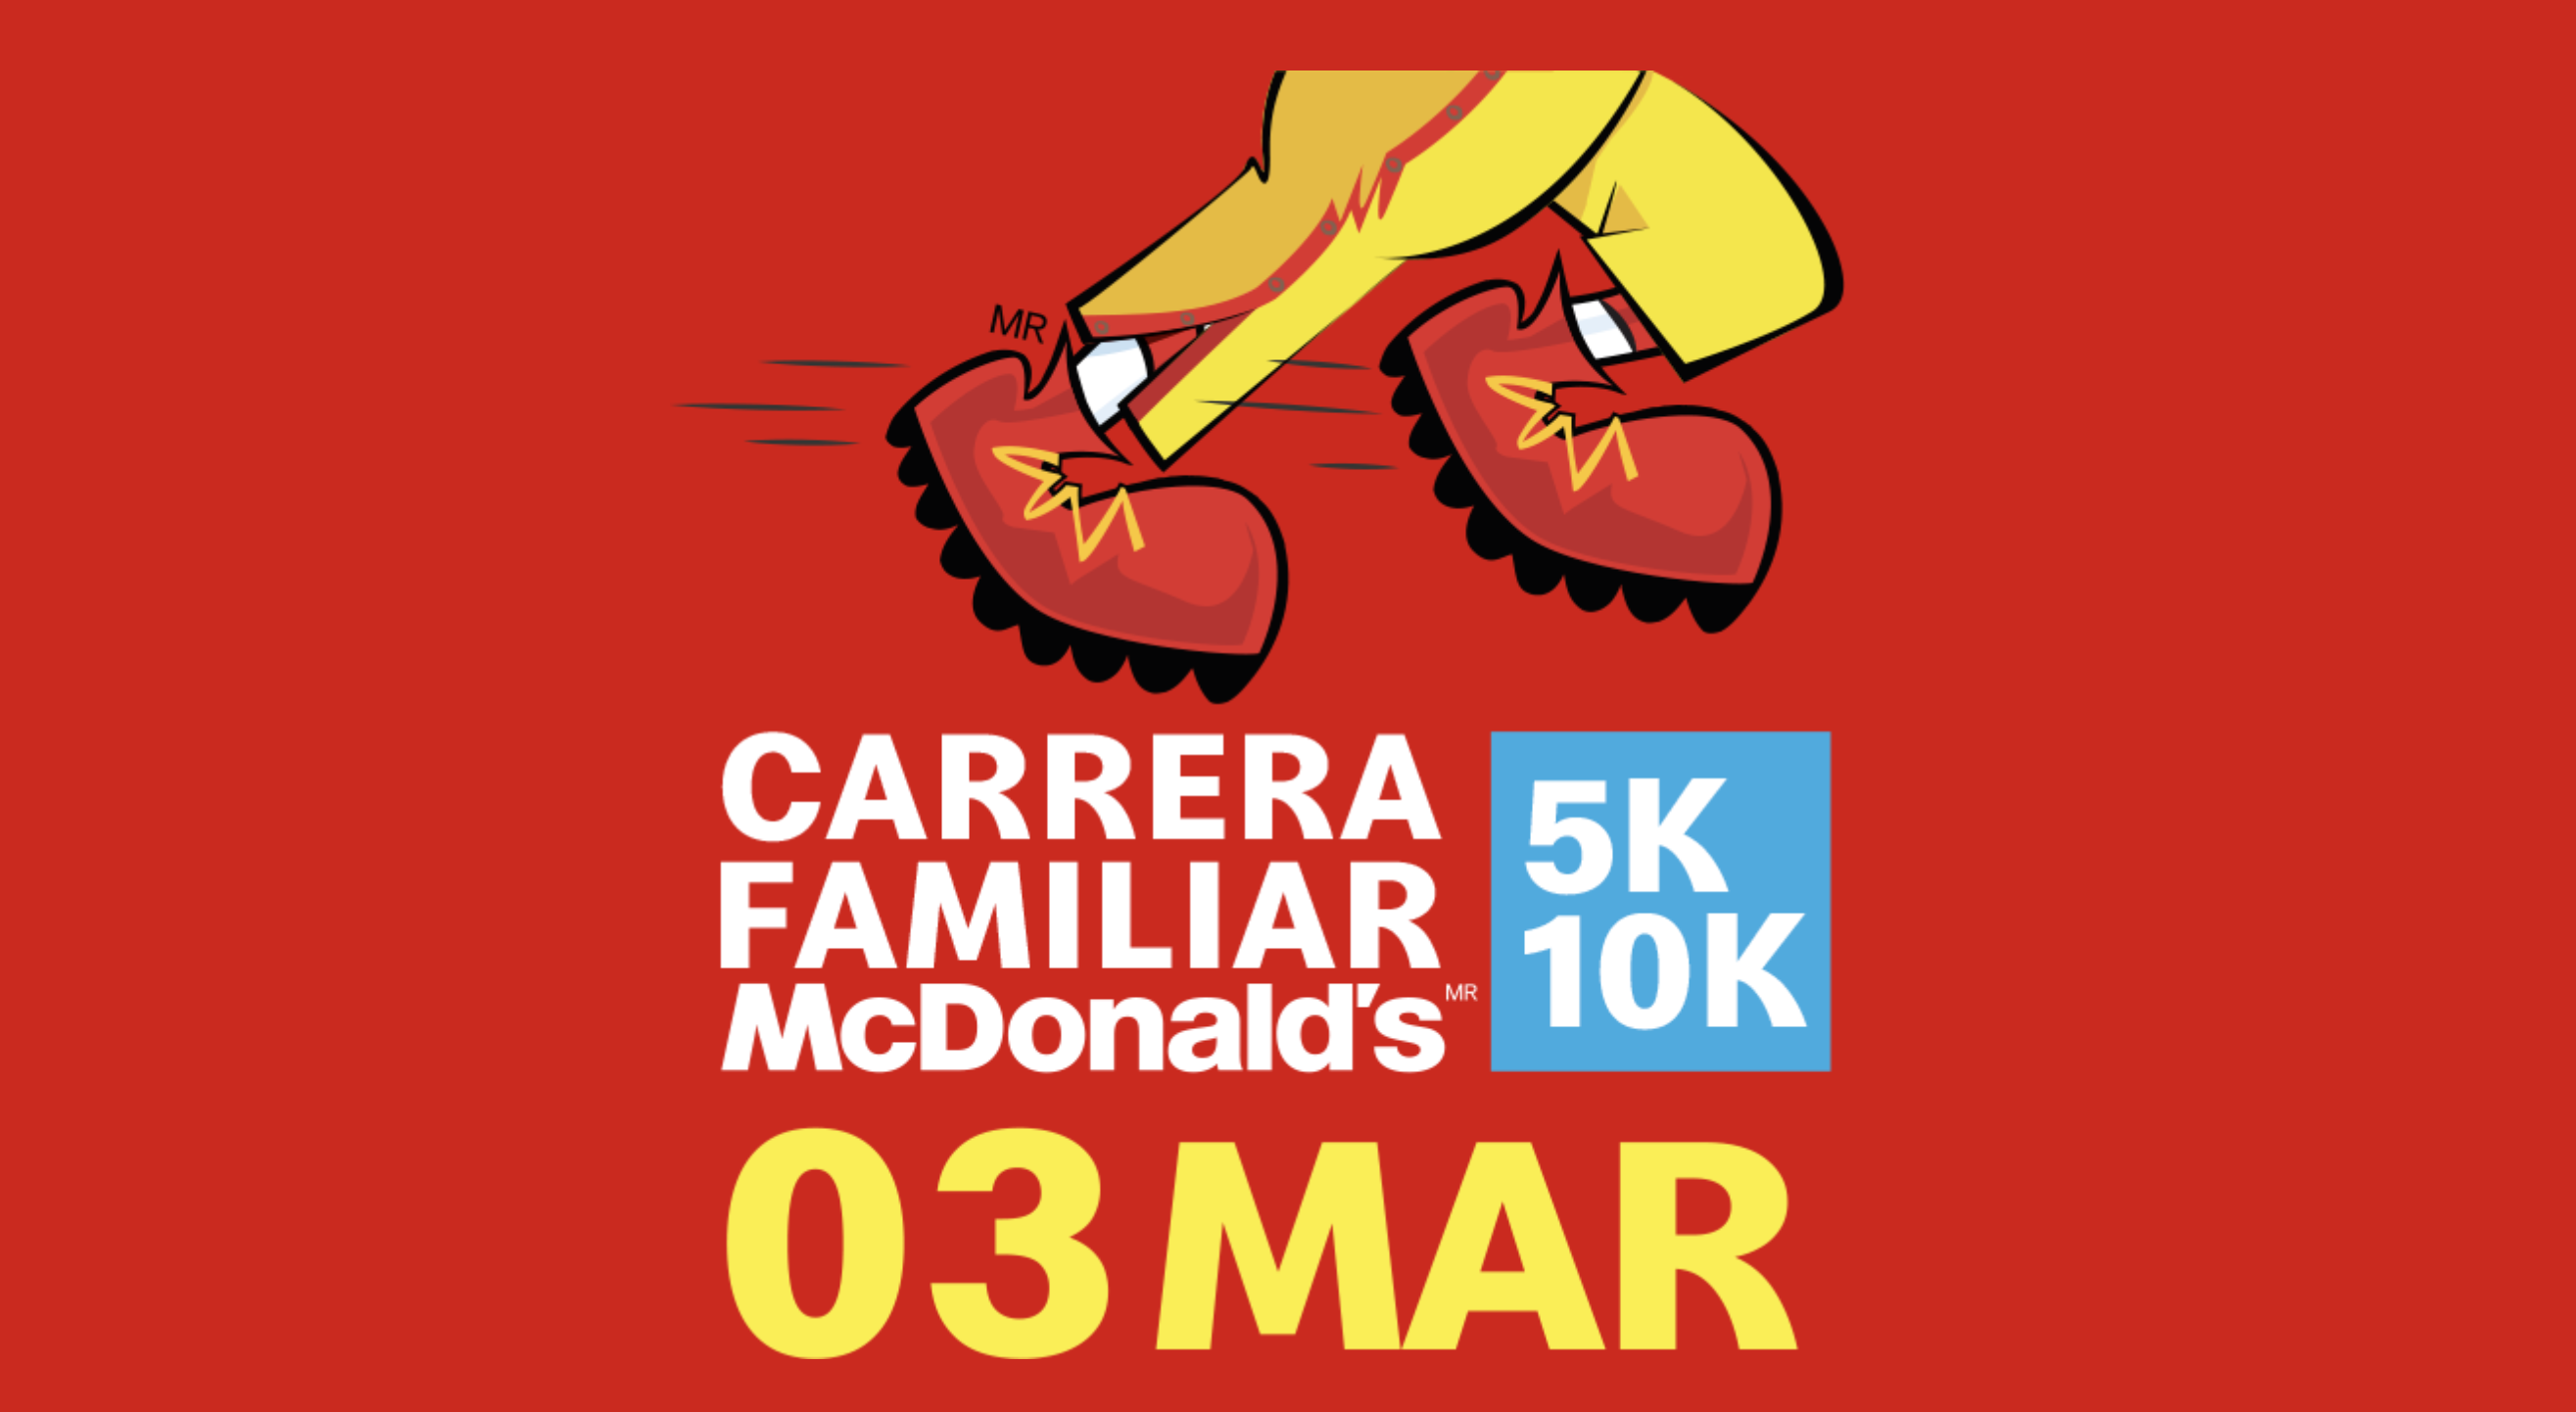 carrera familiar mcdonalds 5k 10k 03 marzo guatemala